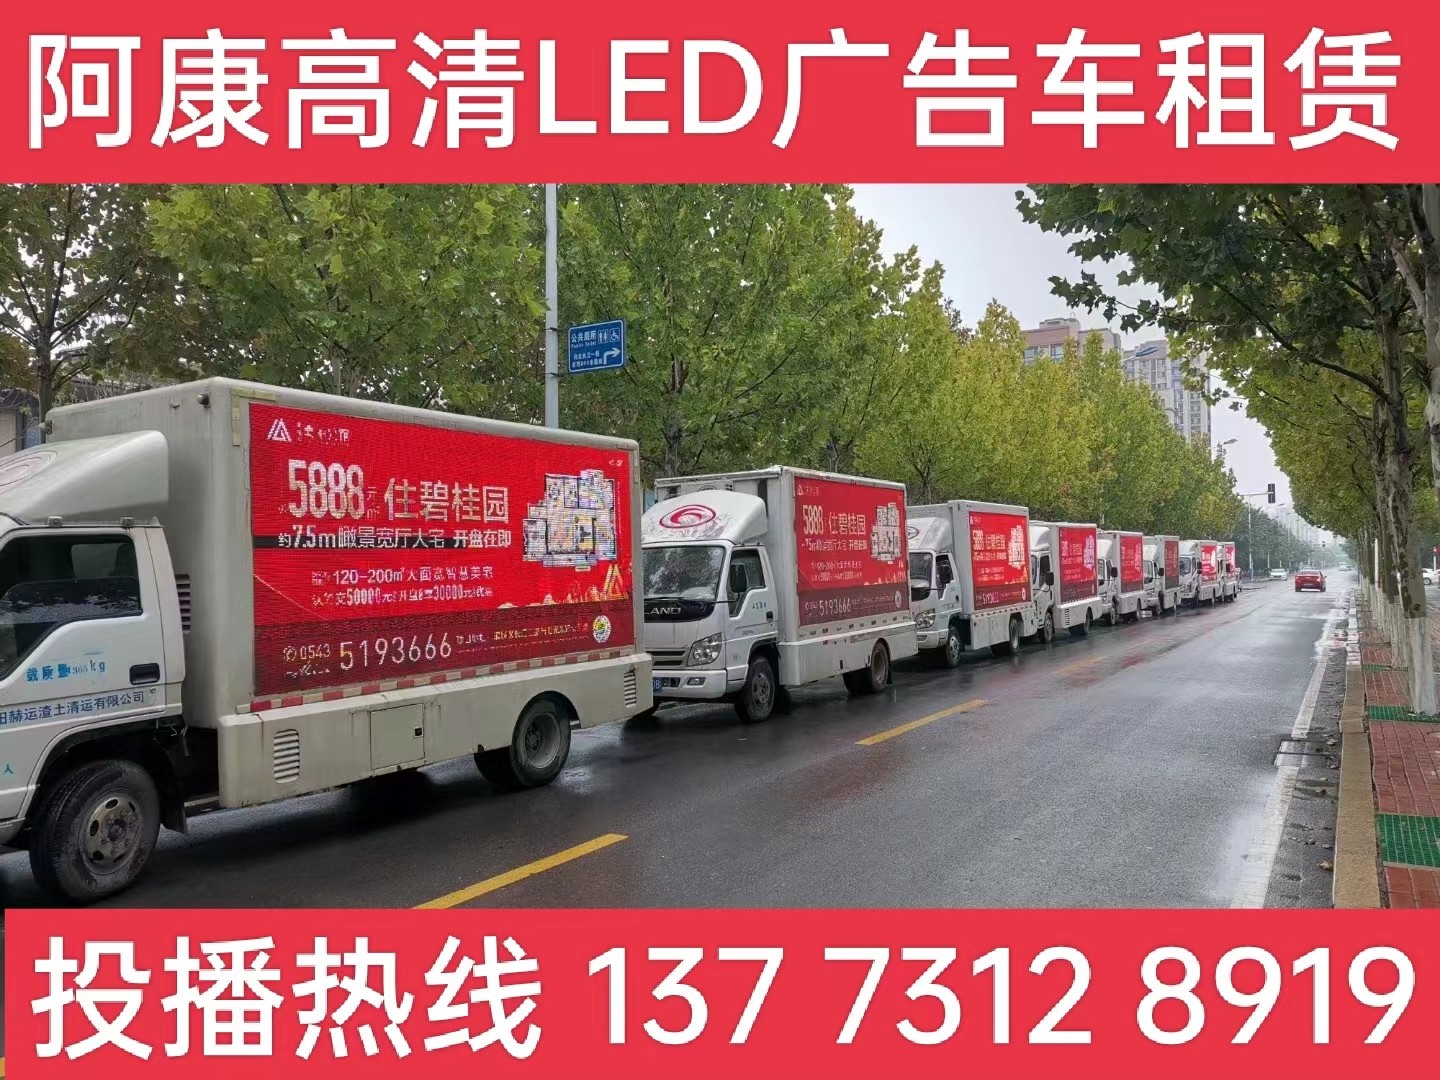 洪泽湖宣传车租赁公司-楼盘LED广告车投放